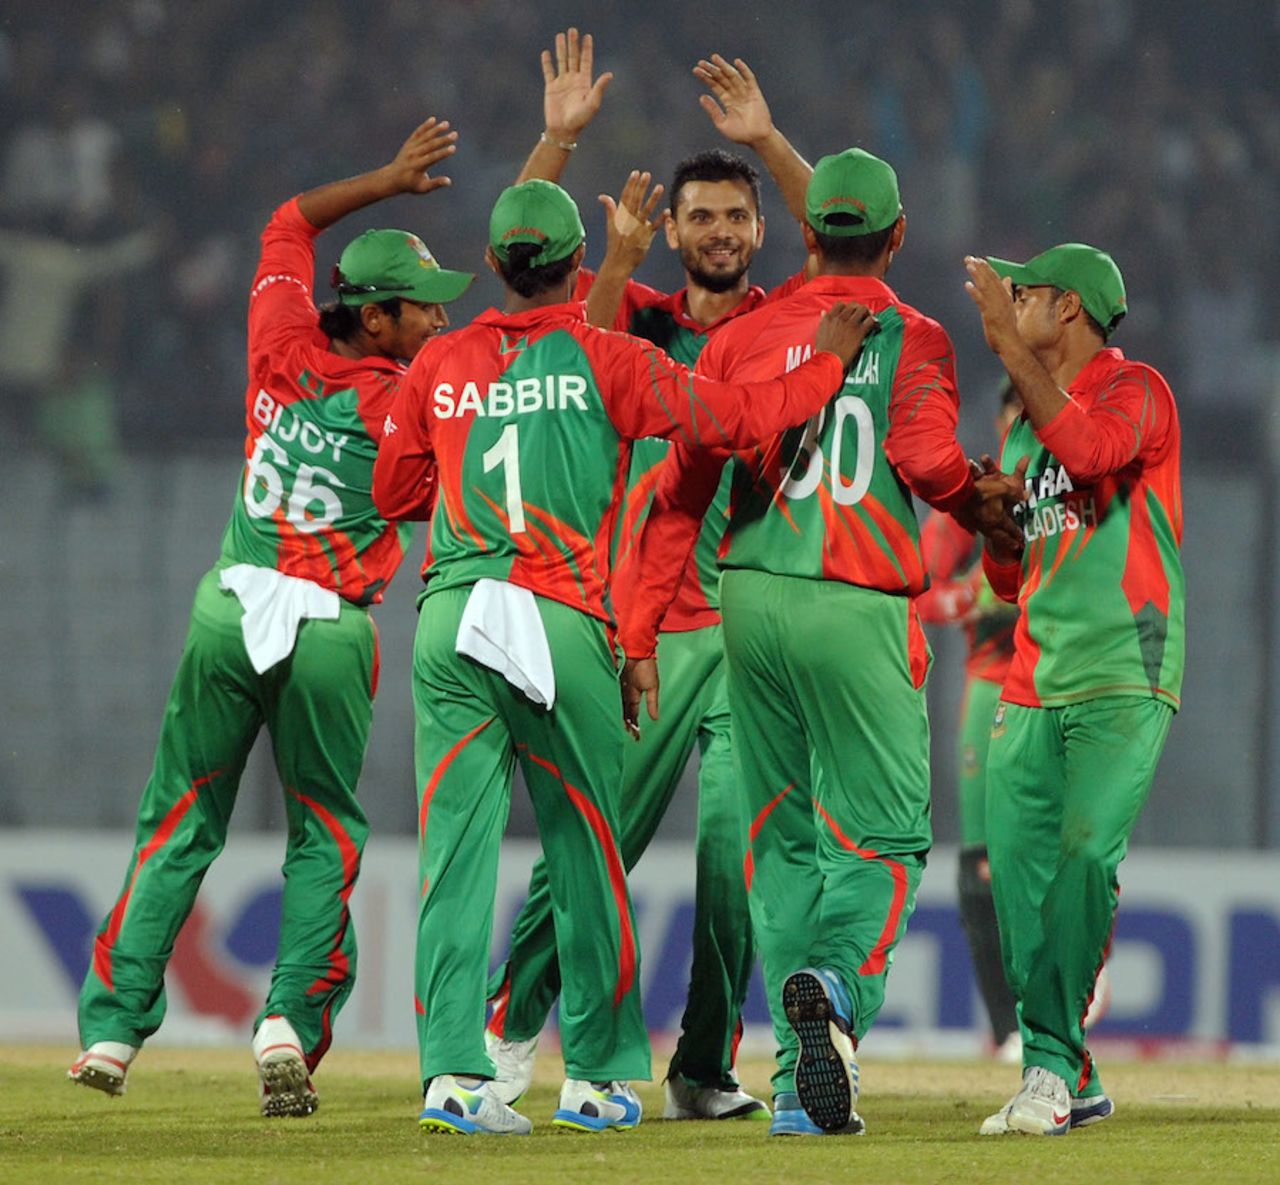 Mashrafe Mortaza is congratulated by team-mates after a wicket , Bangladesh v Zimbabwe, 2nd ODI, Chittagong, November 23, 2014